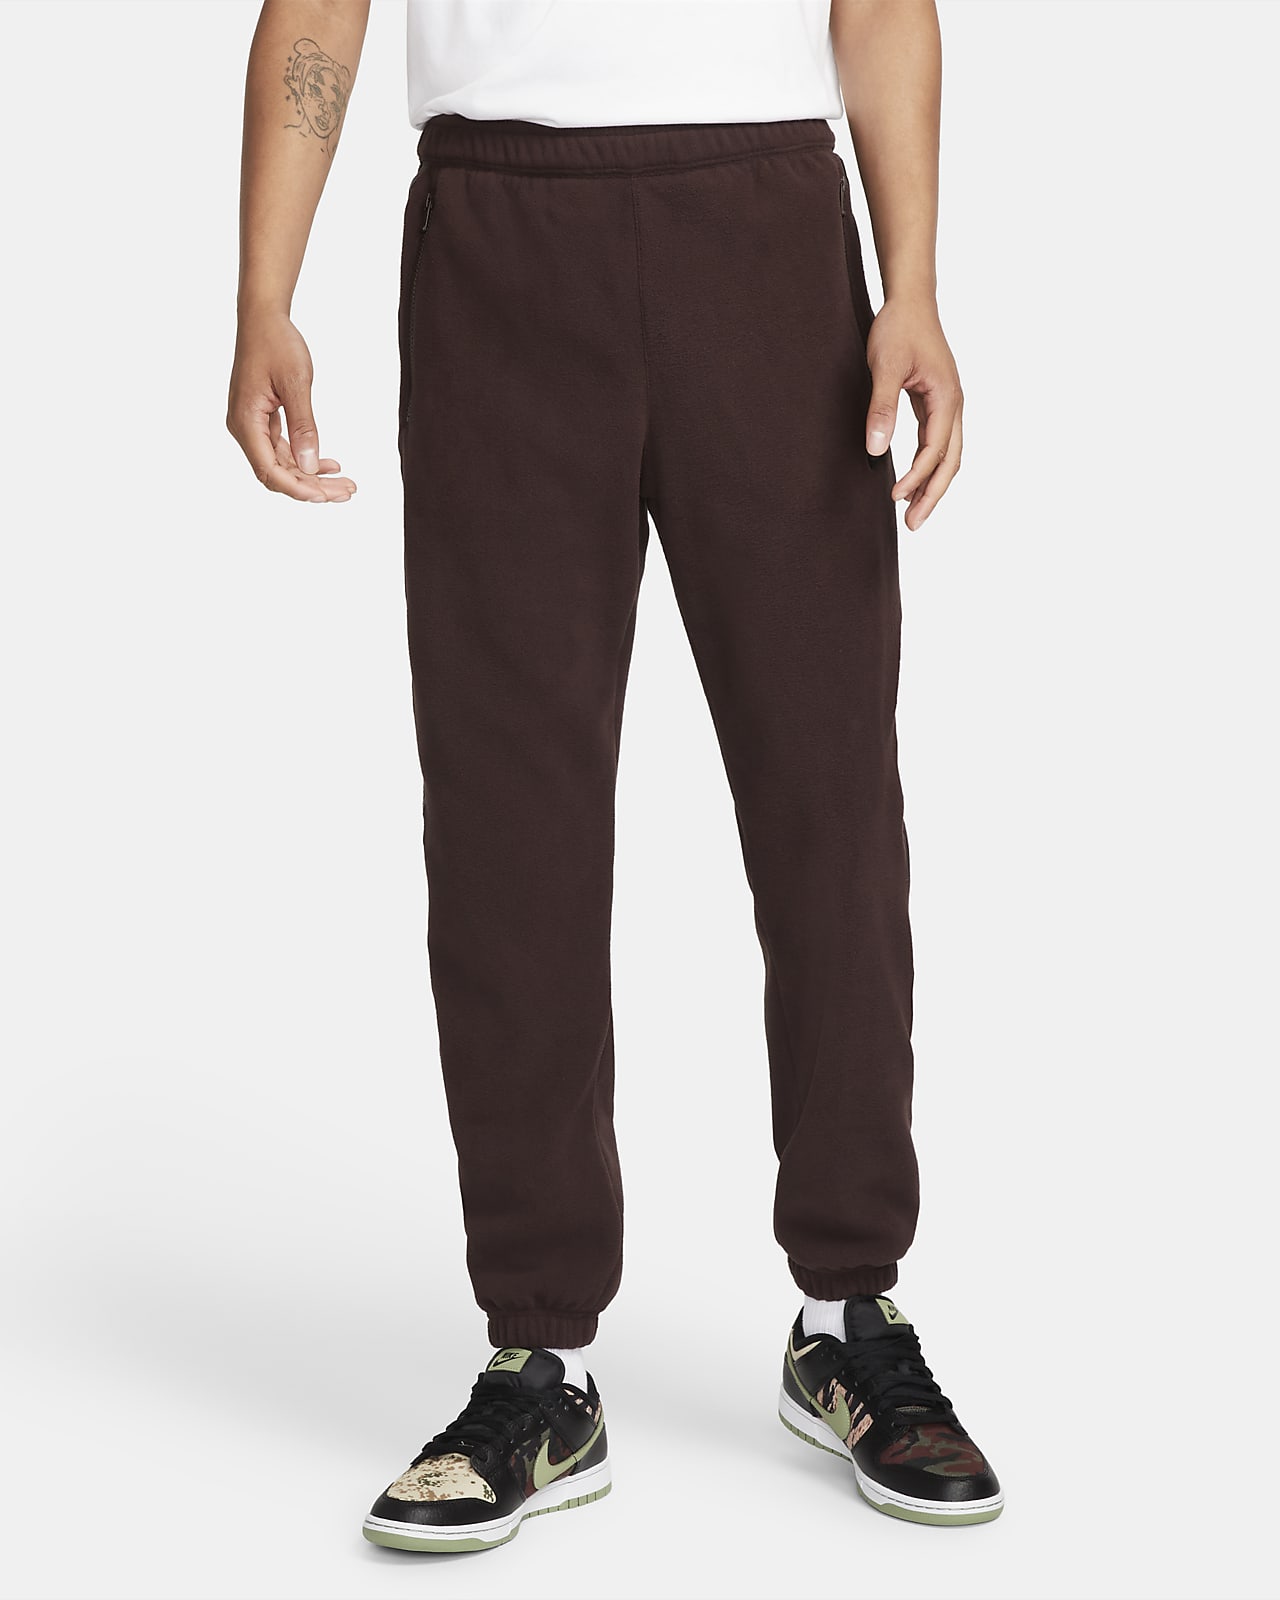 Nike Sportswear Therma-FIT Pantalón de tejido Fleece - Hombre